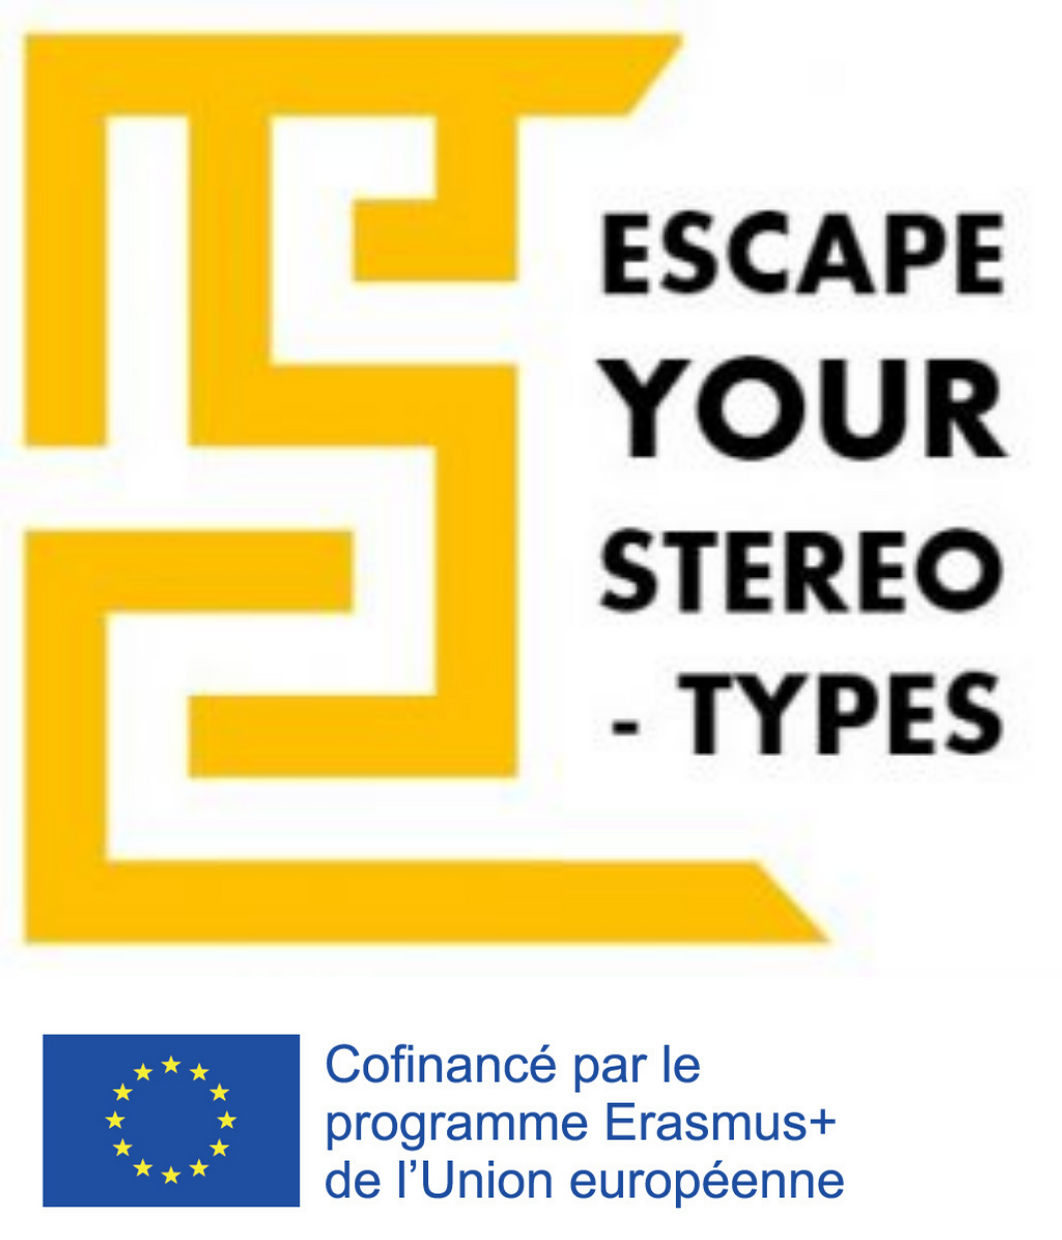 Logo Escape Your Stereotypes Projet confinancé par le programme erasmus + de l'union européenne L'objectif du projet Escape your Stereotypes est de créer un Escape Game pédagogique sur l'interculturalité et la lutte contre les stéréotypes et les préjugés. Escape your Stereotypes est soutenu par le programme Erasmus+ de l'Union Européenne.